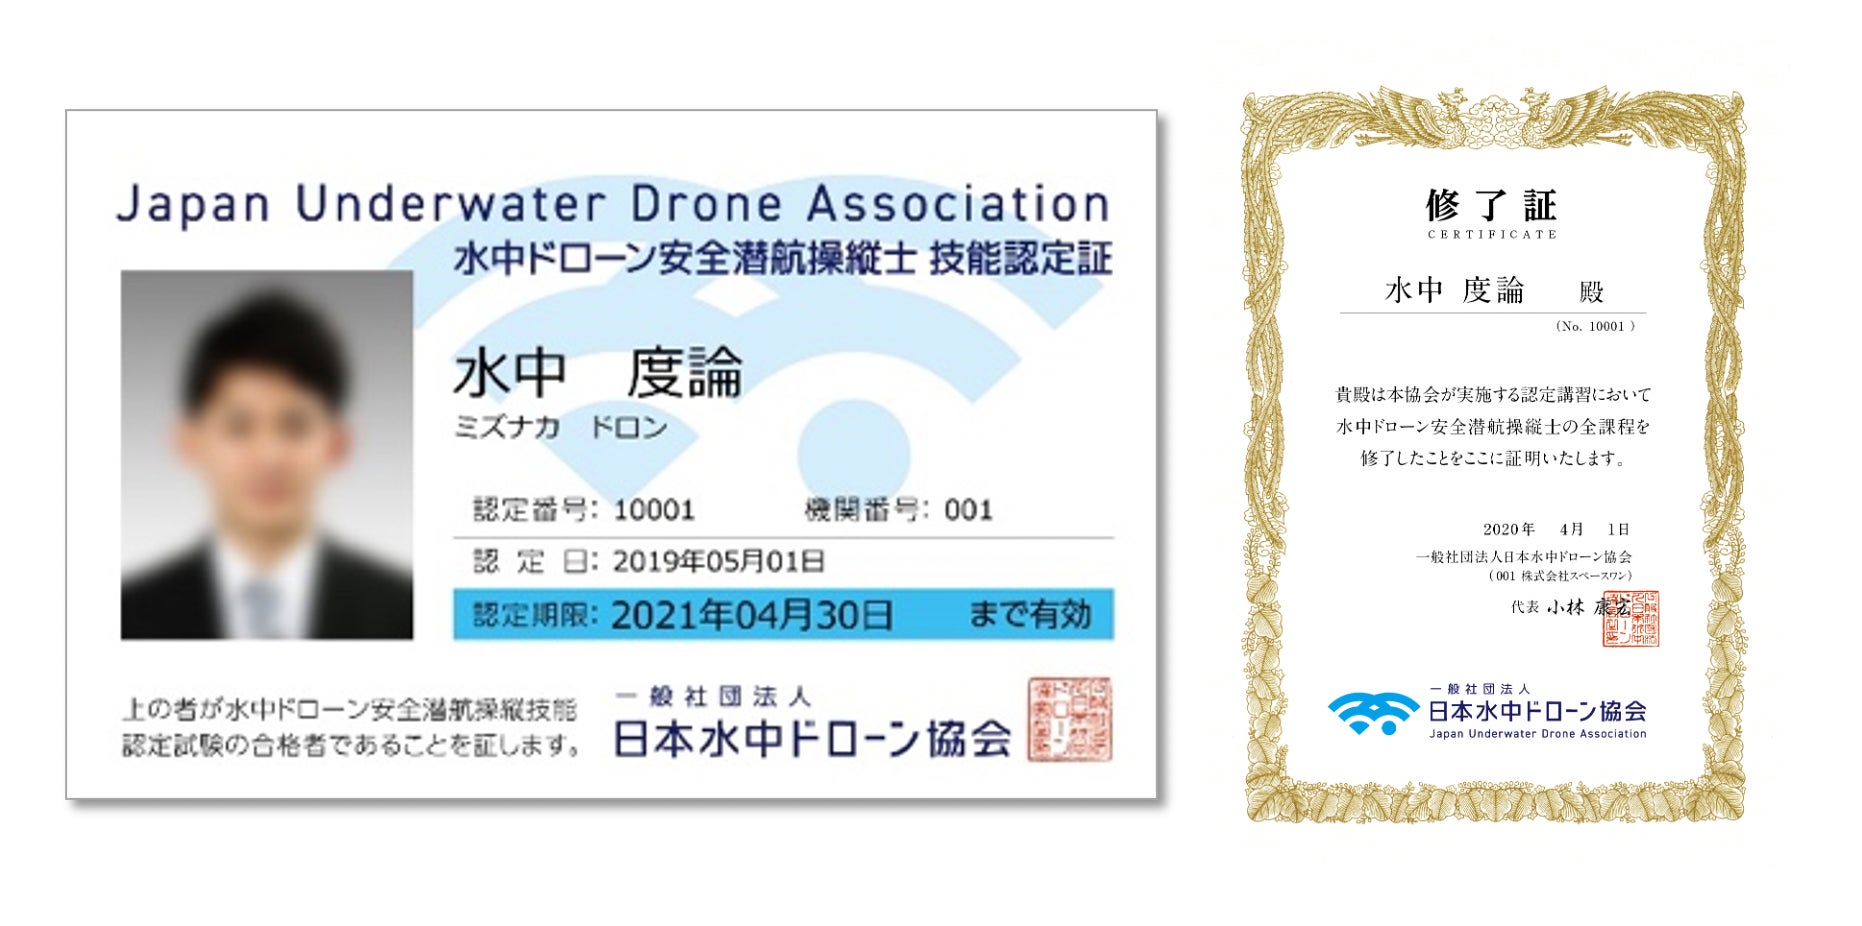 東京で水中ドローンライセンス取得「水中ドローン安全潜航操縦士認定講習」10月2日(月)3日(火)開催のお知らせのサブ画像3